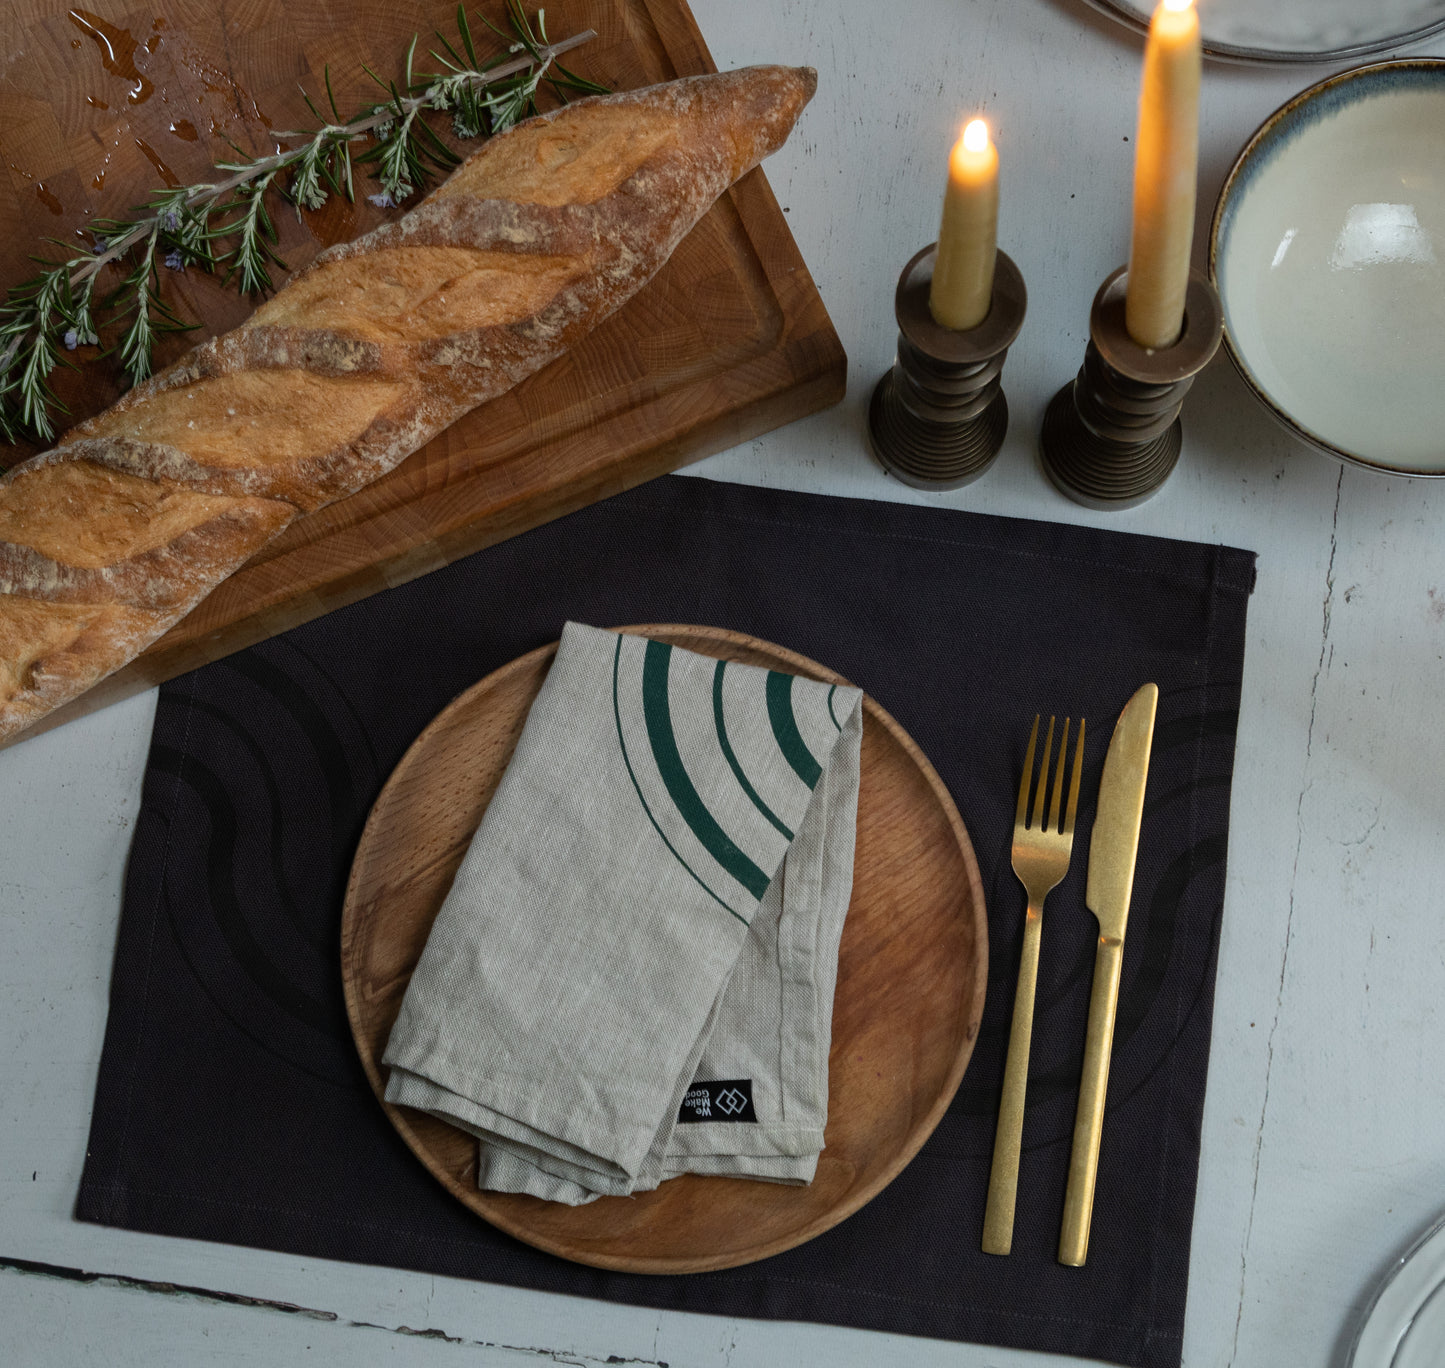 Oatmeal & Forest Green Handprinted Linen Napkin